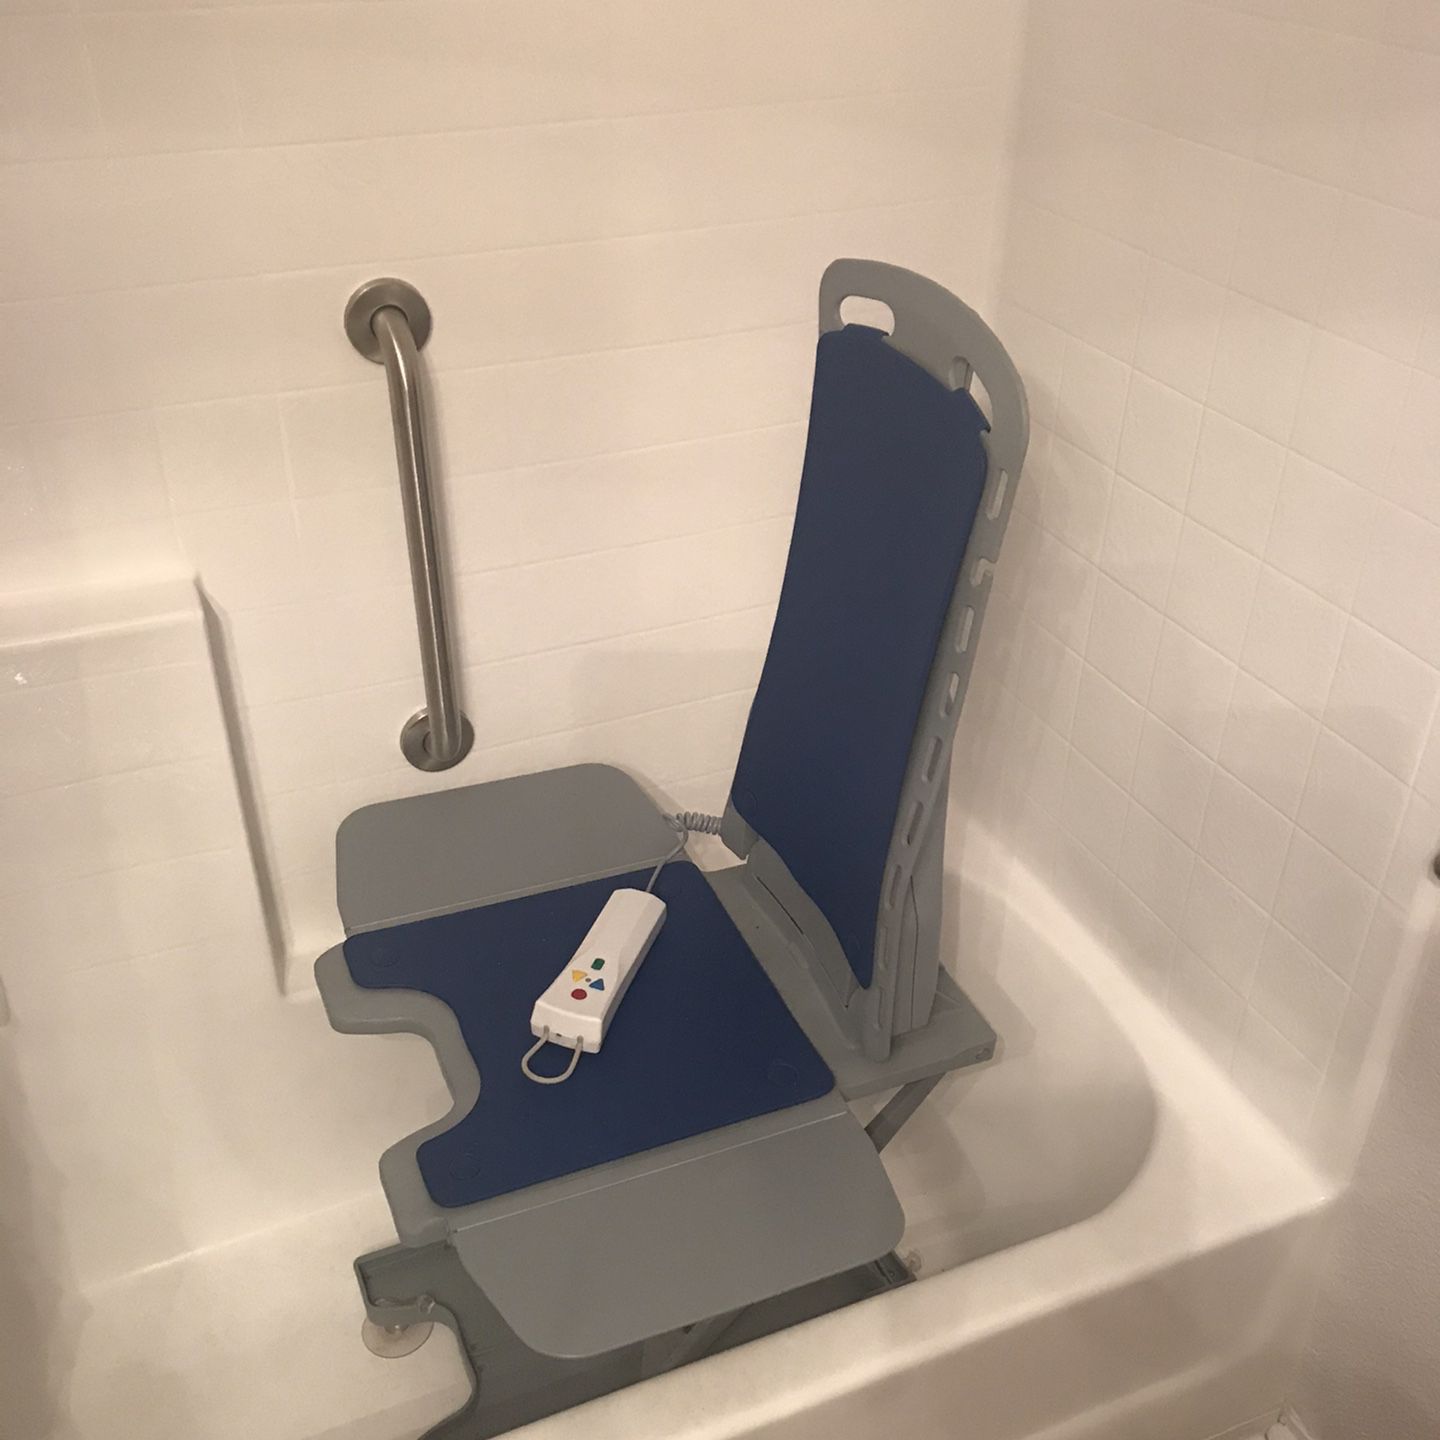 Handicap Lift “Bellavita Lift Assist” For Bathtub